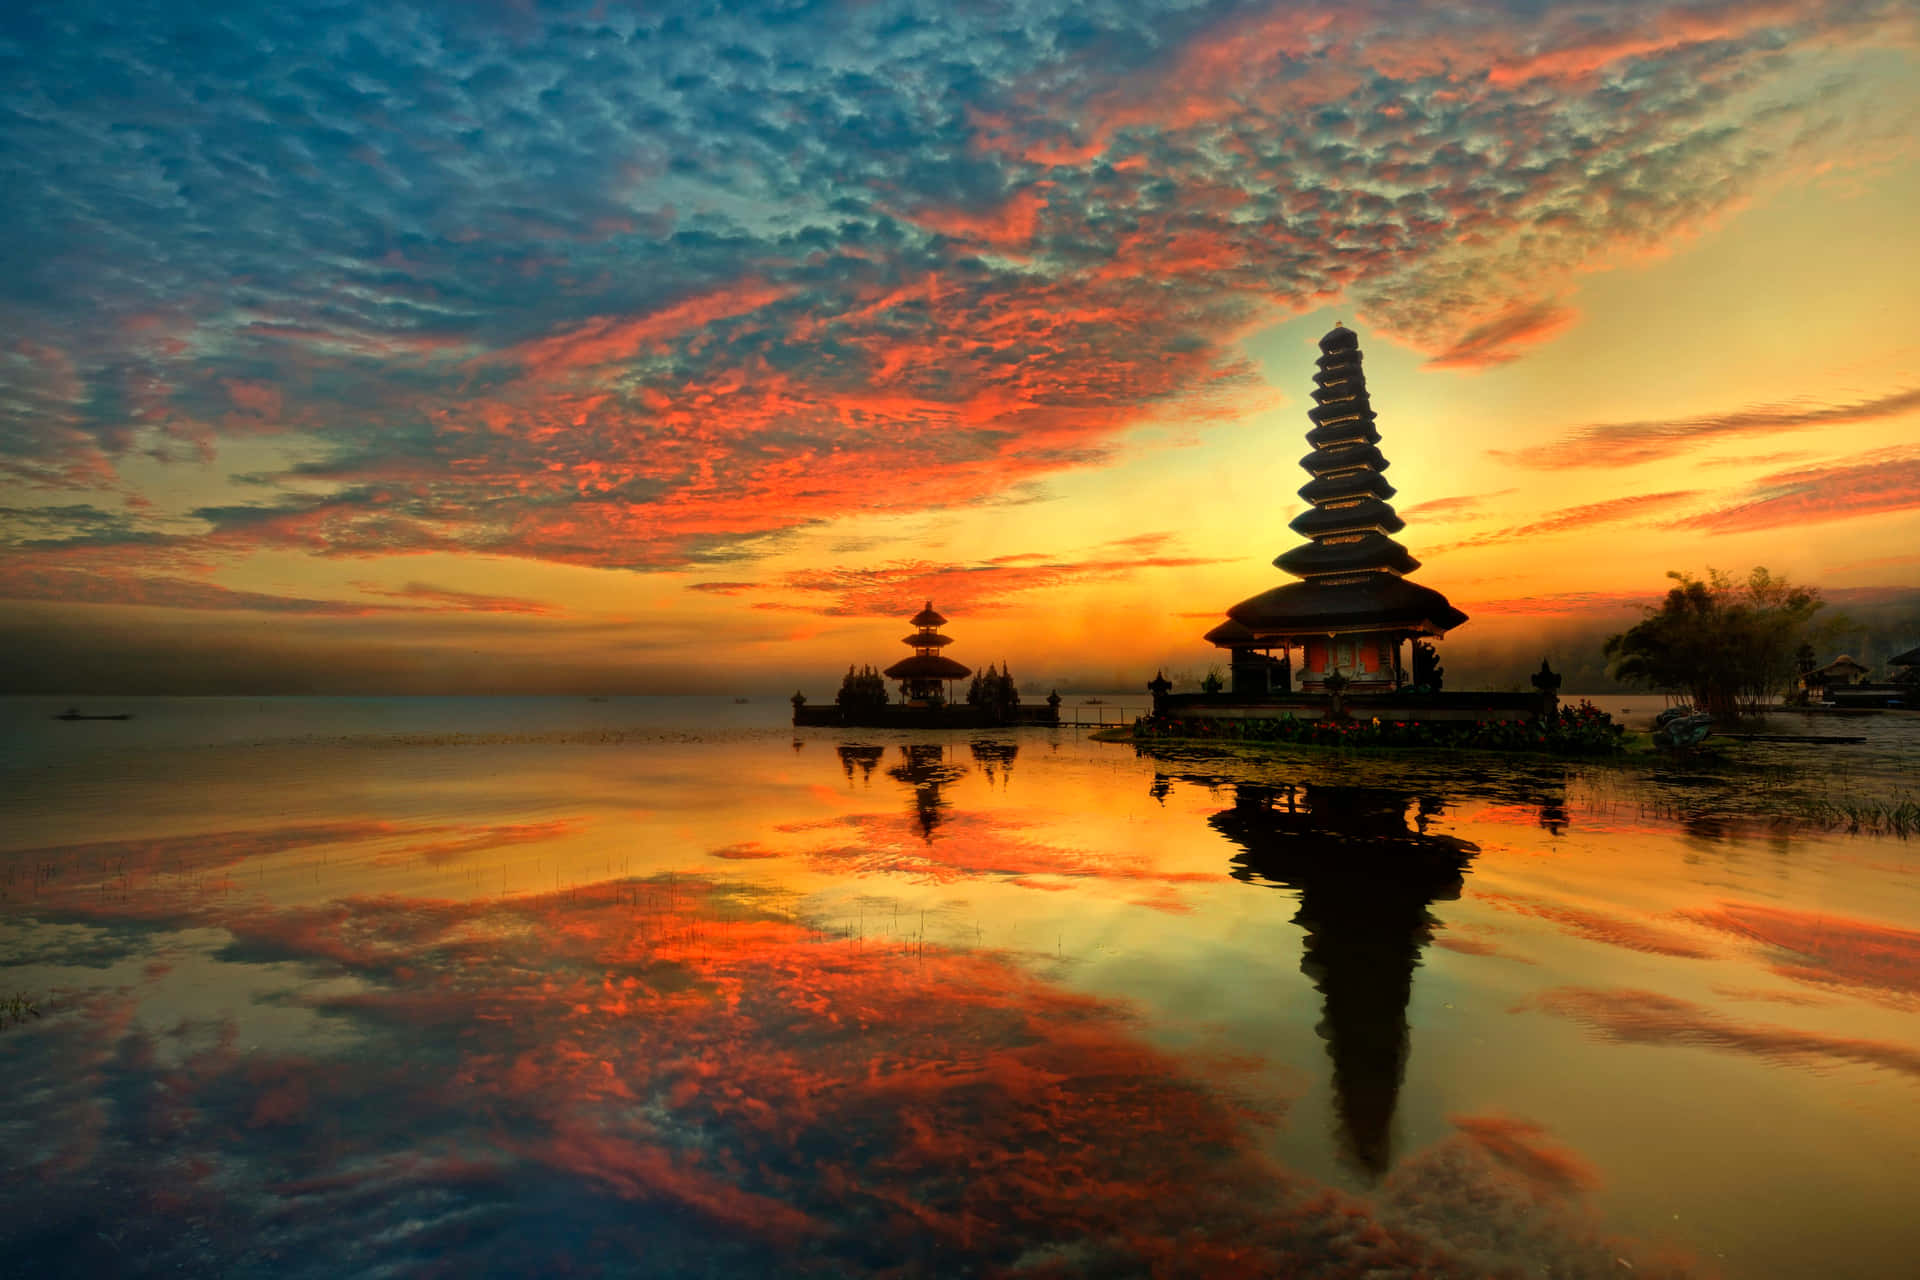 Taen Paus Från Verkligheten I Den Vackra Paradiset Bali!